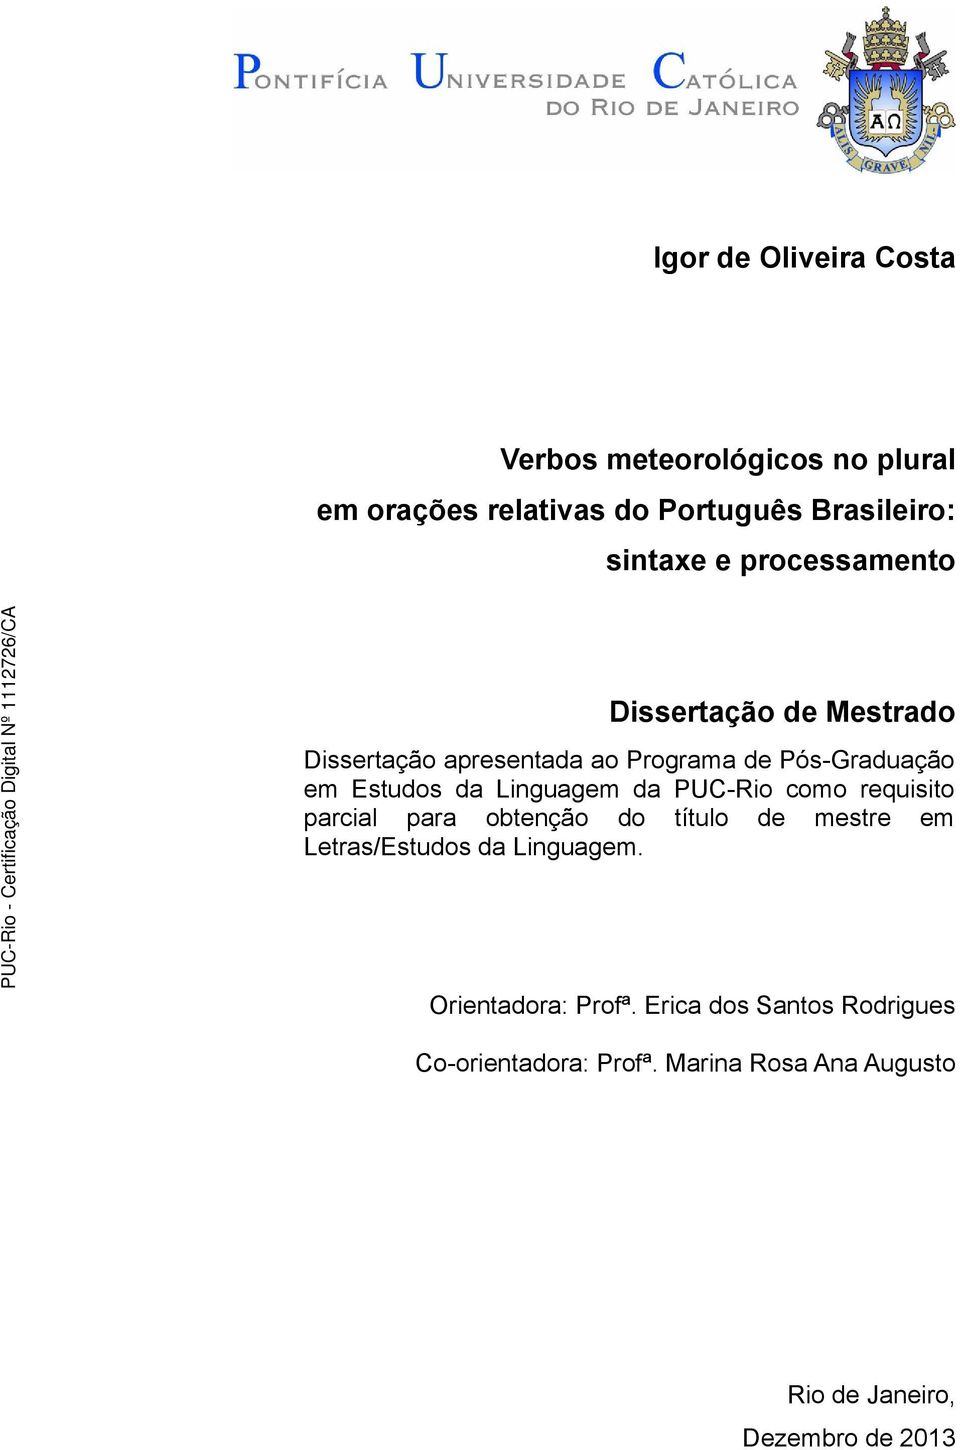 Linguagem da PUC-Rio como requisito parcial para obtenção do título de mestre em Letras/Estudos da Linguagem.